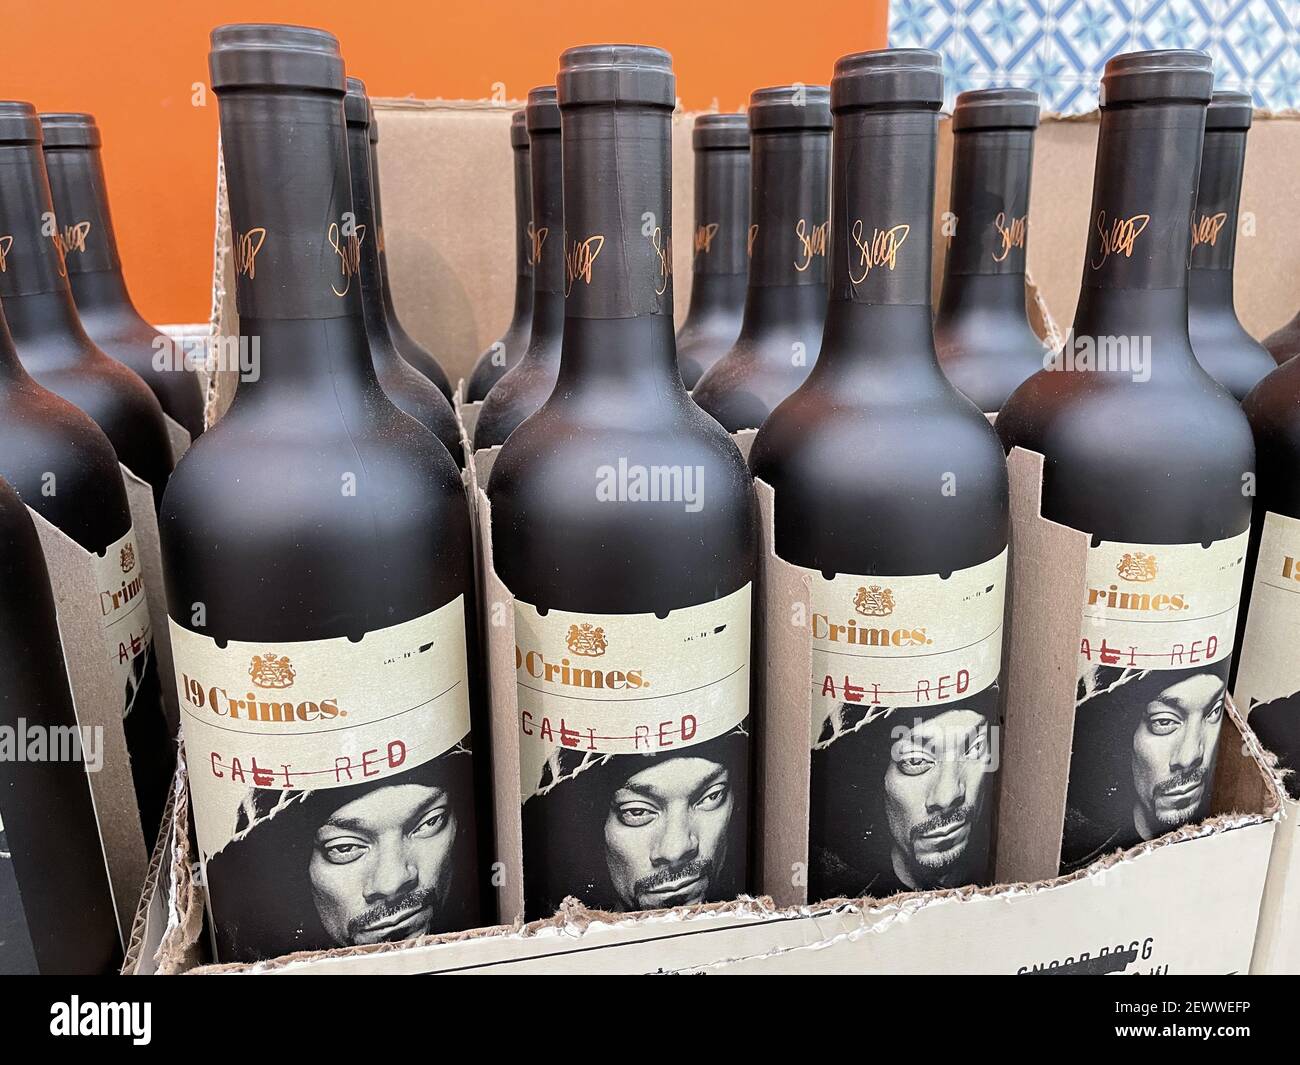 FRESNO, ÉTATS-UNIS - 22 févr. 2021: Une photo de Snoop Dog's New 19 crimes Cali Red Wine en bouteilles noires signé dans leurs affaires 2021 février Banque D'Images